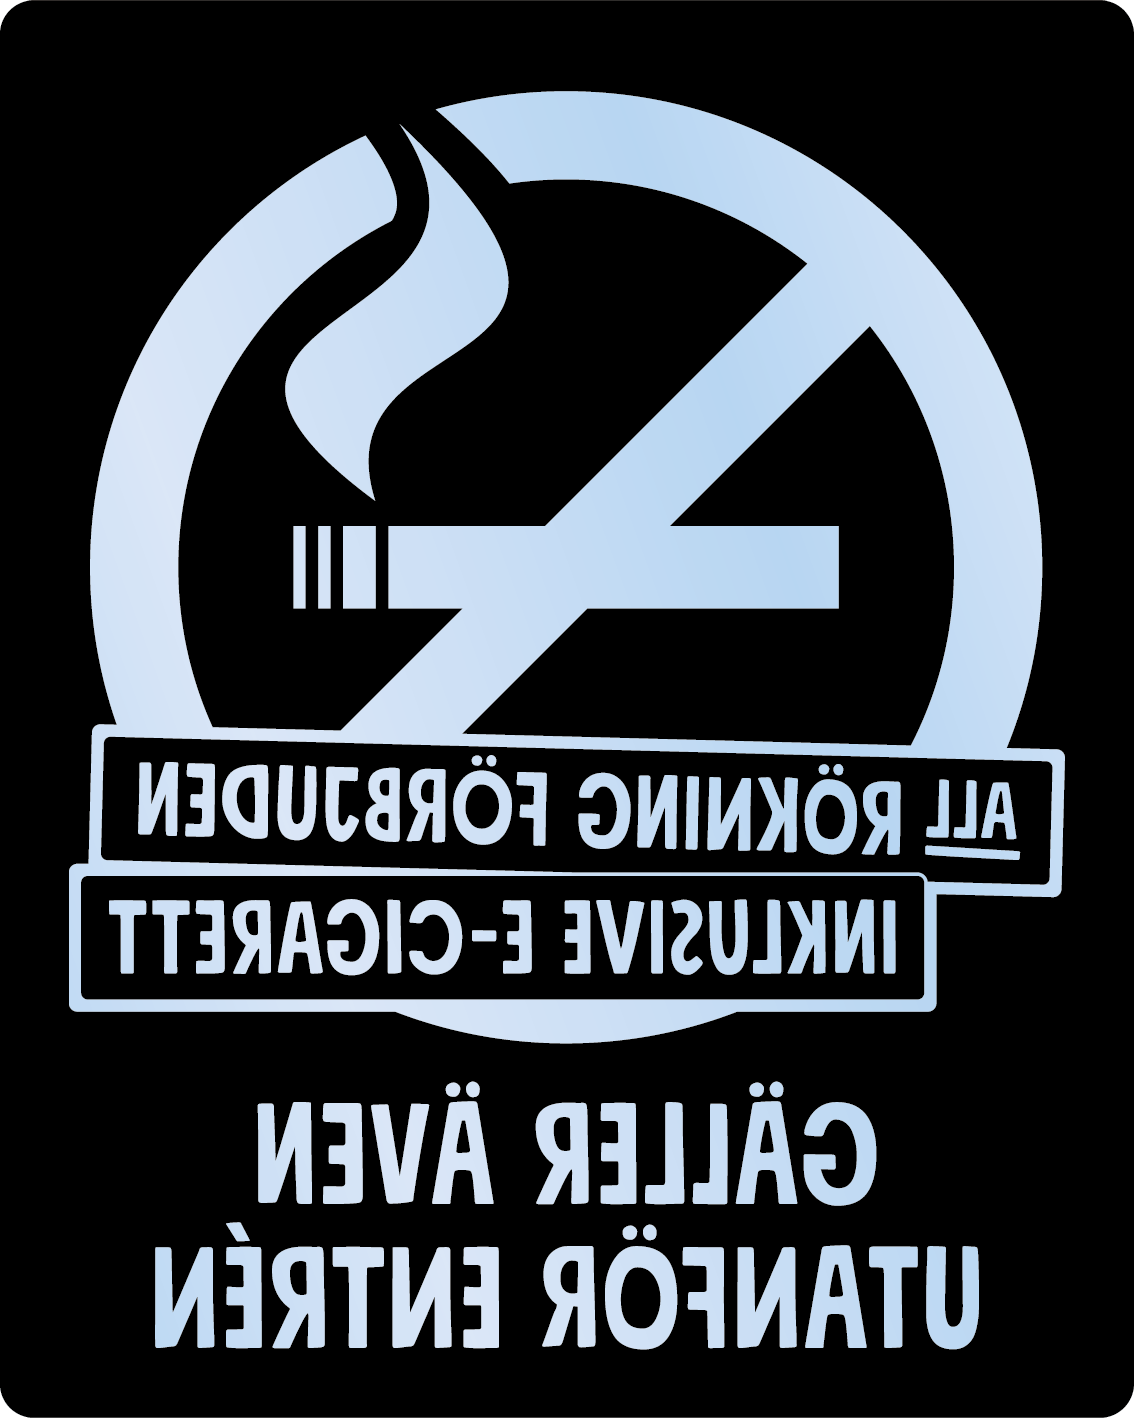 Bild rökförbudsskylt 03A16: Valfri PMS* / Transparent